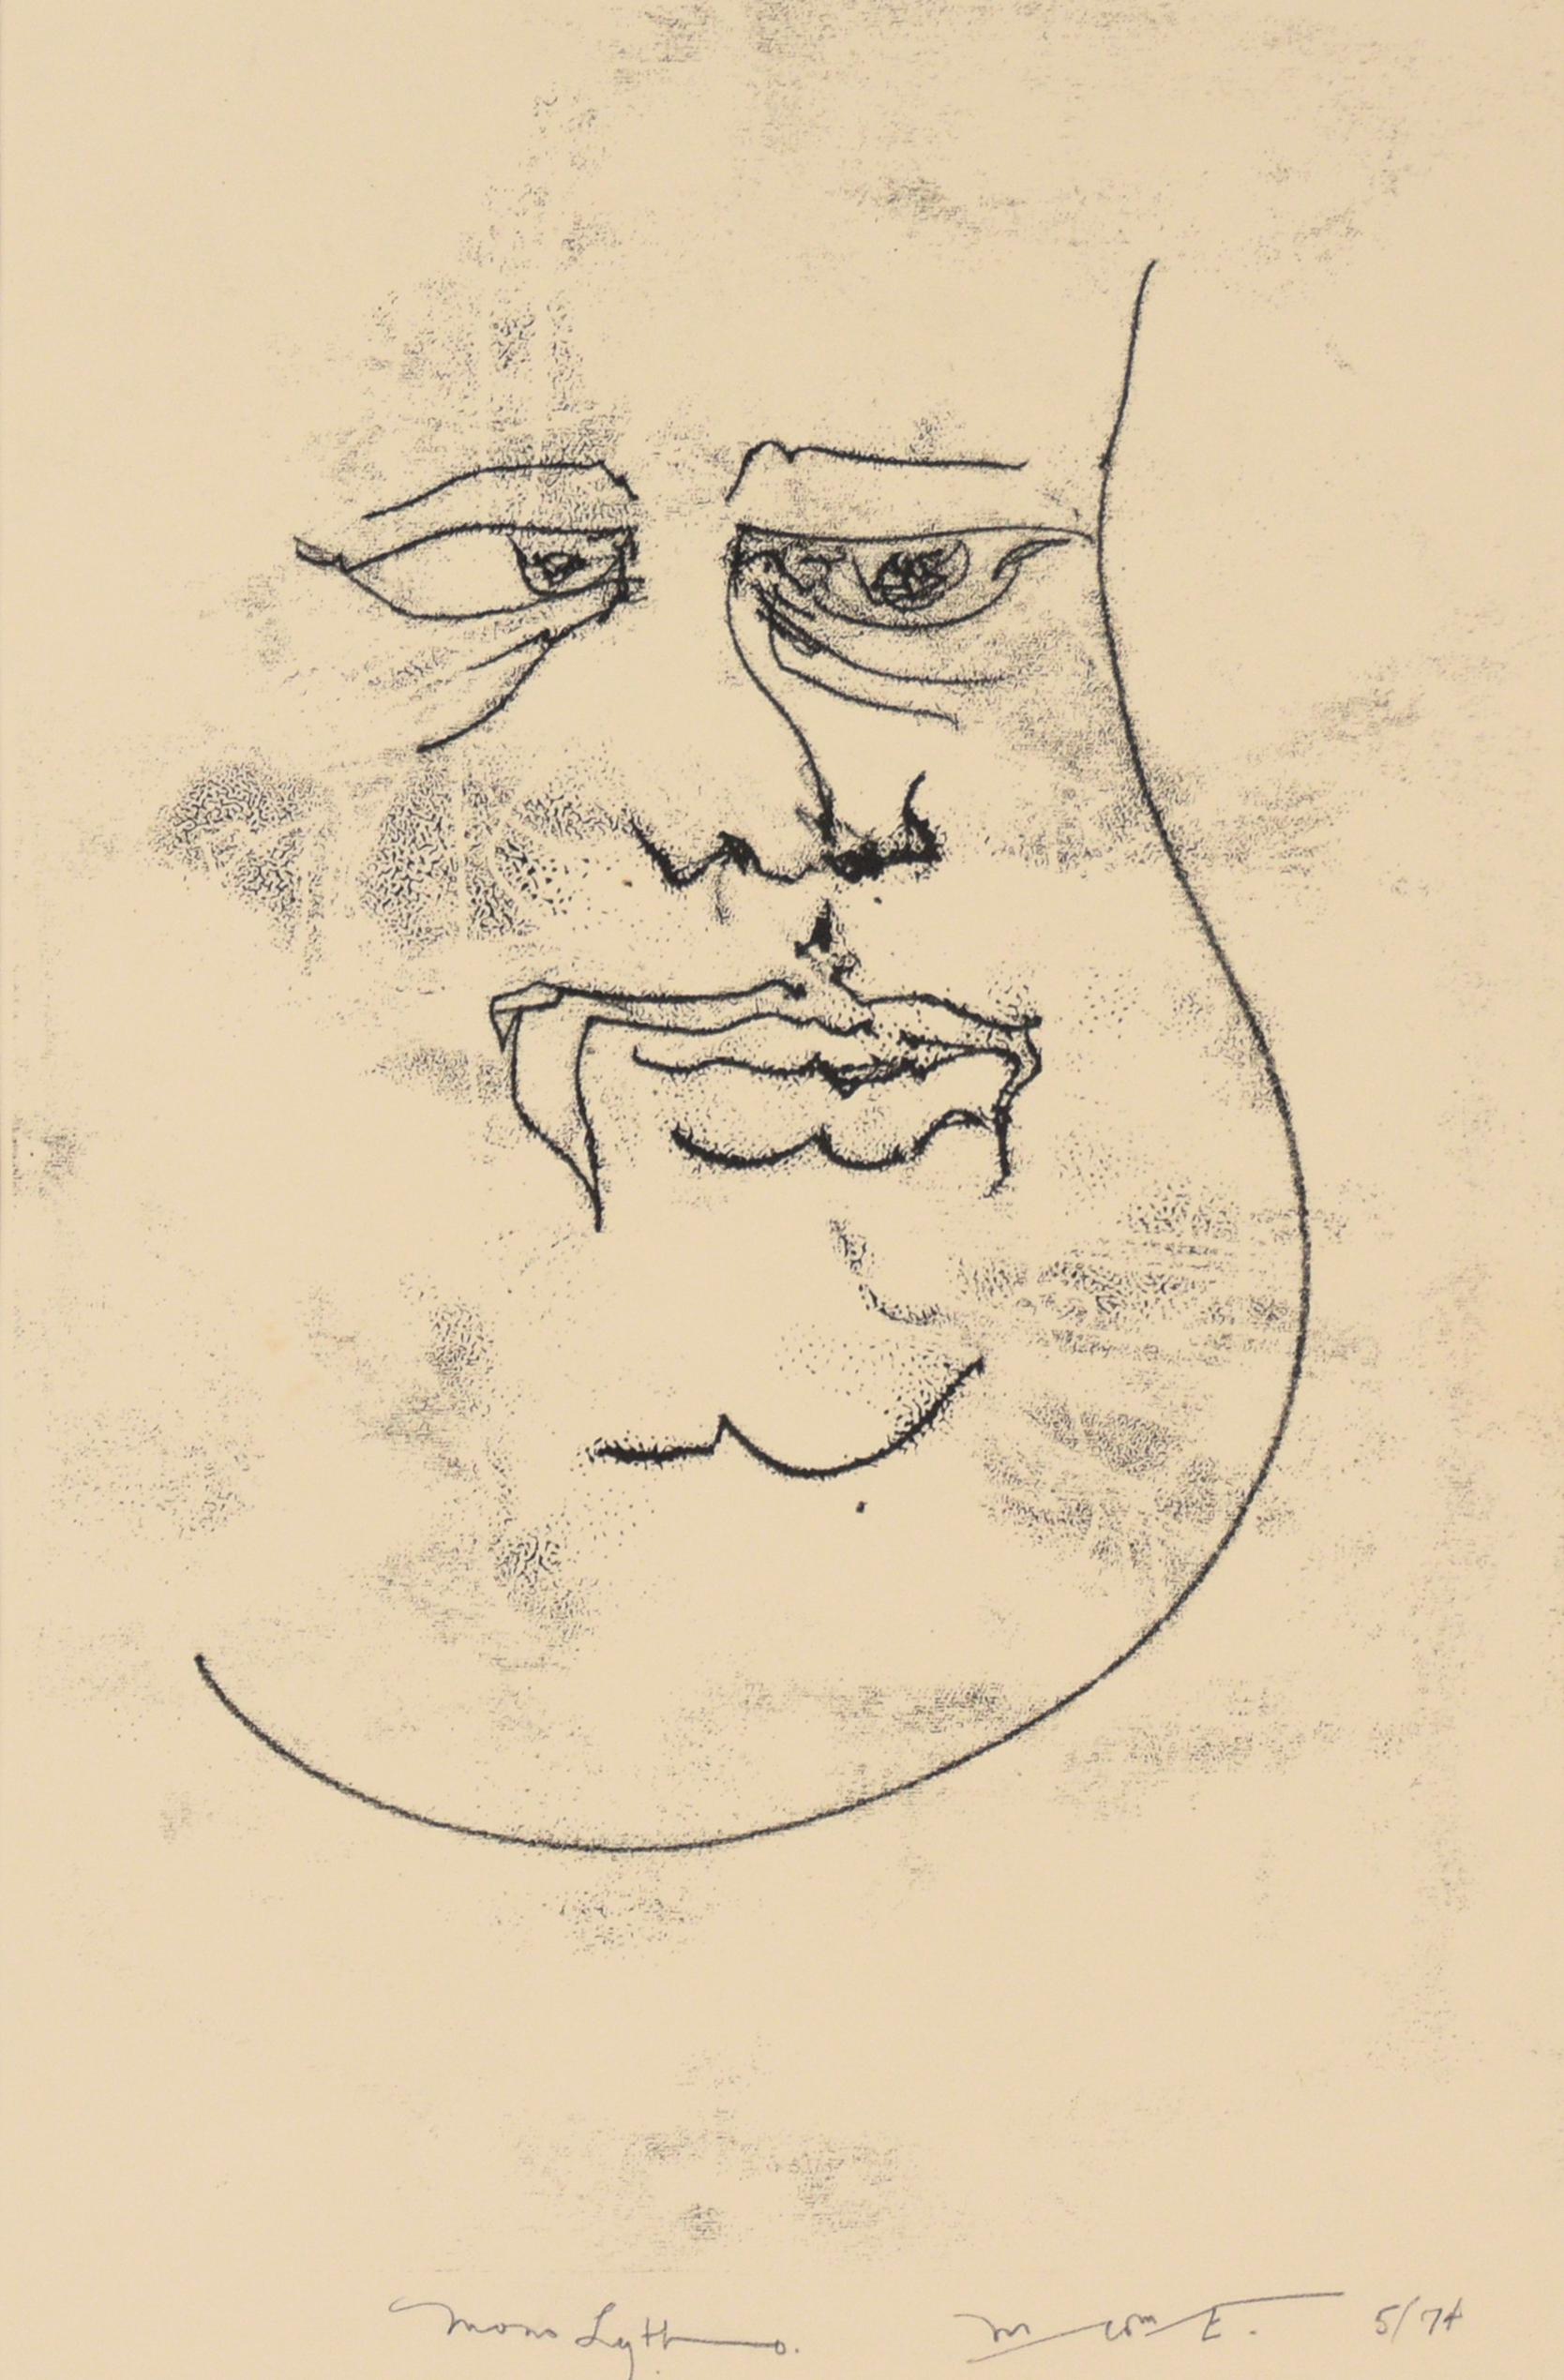 Visage - 1974 Original-Lithographie auf Papier

Original-Lithografie von 1974, die ein abstrahiertes Männergesicht von Michael William Eggleston (Amerikaner, 20. Jahrhundert) darstellt. Mit schwarzer Tinte wird das abstrahierte Gesicht eines Mannes